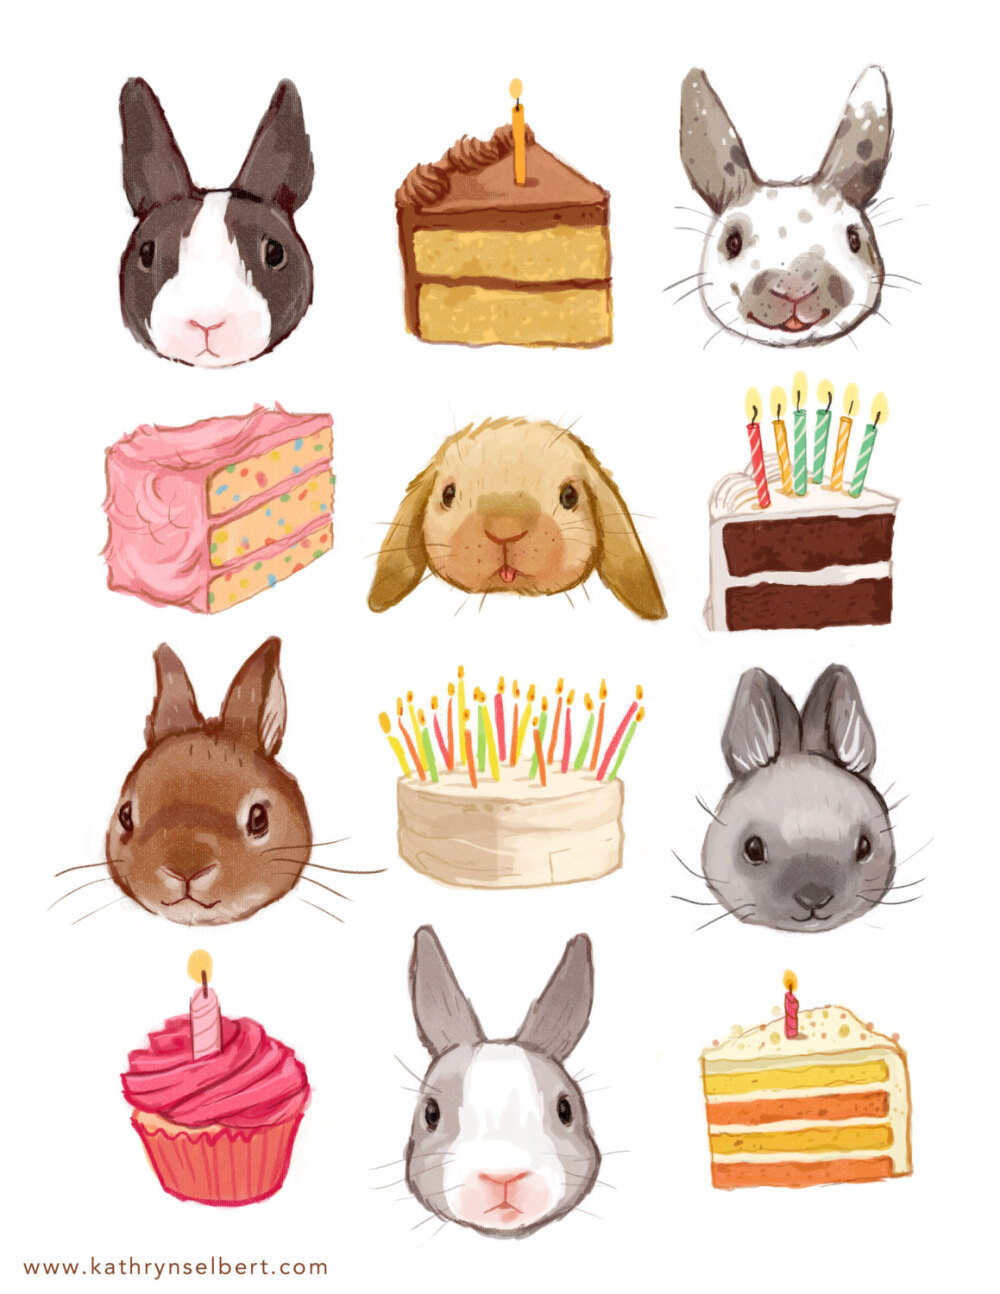 水彩画 水粉画 插画 手绘 美食 甜品 动物 兔子